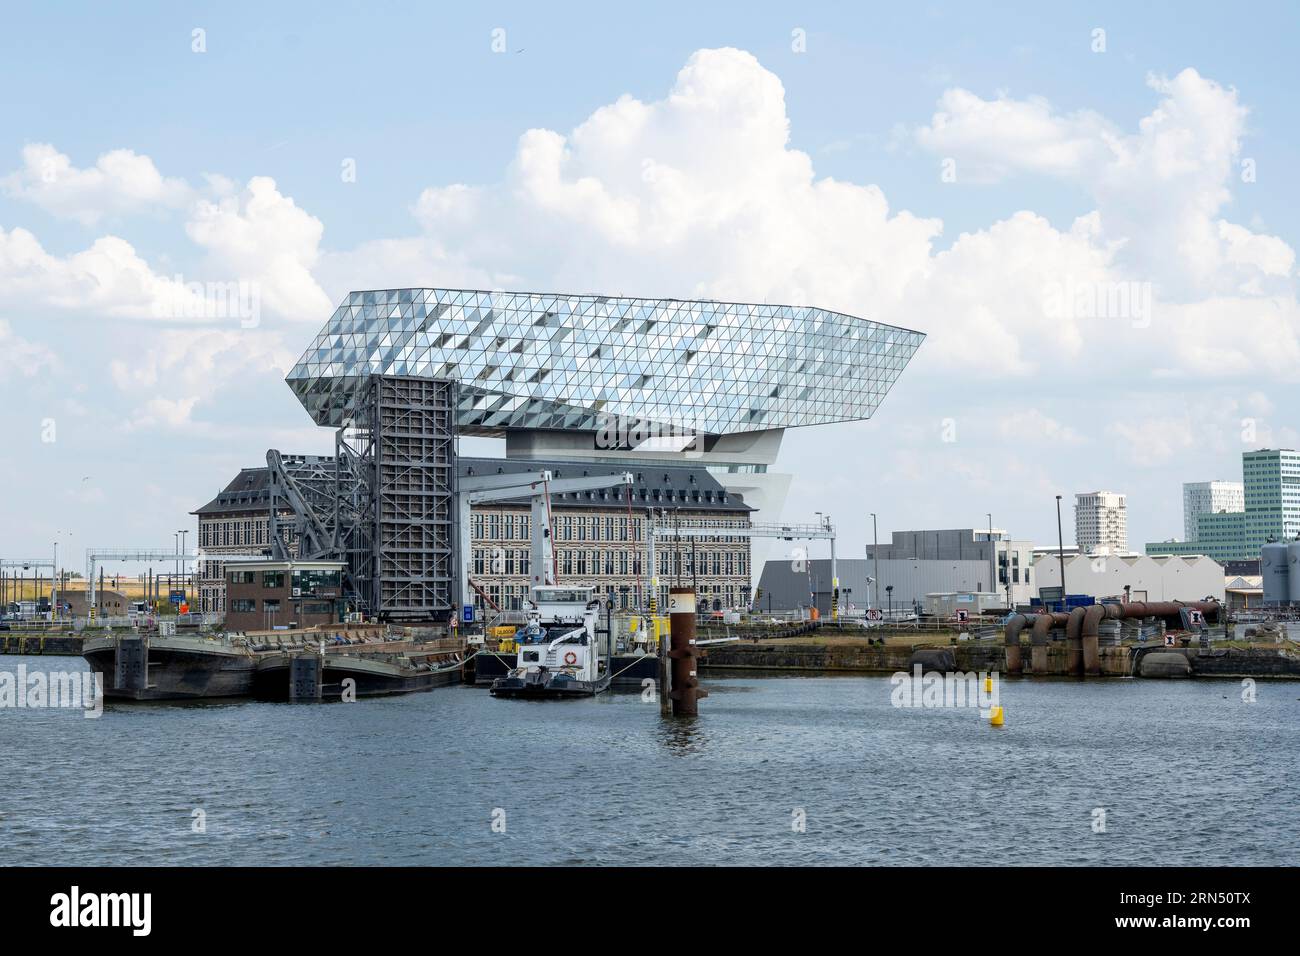 Quartier generale dell'autorità portuale di Anversa, progettata dal famoso architetto iraniano Zaha Hadid, Anversa, Fiandre, Belgio Foto Stock